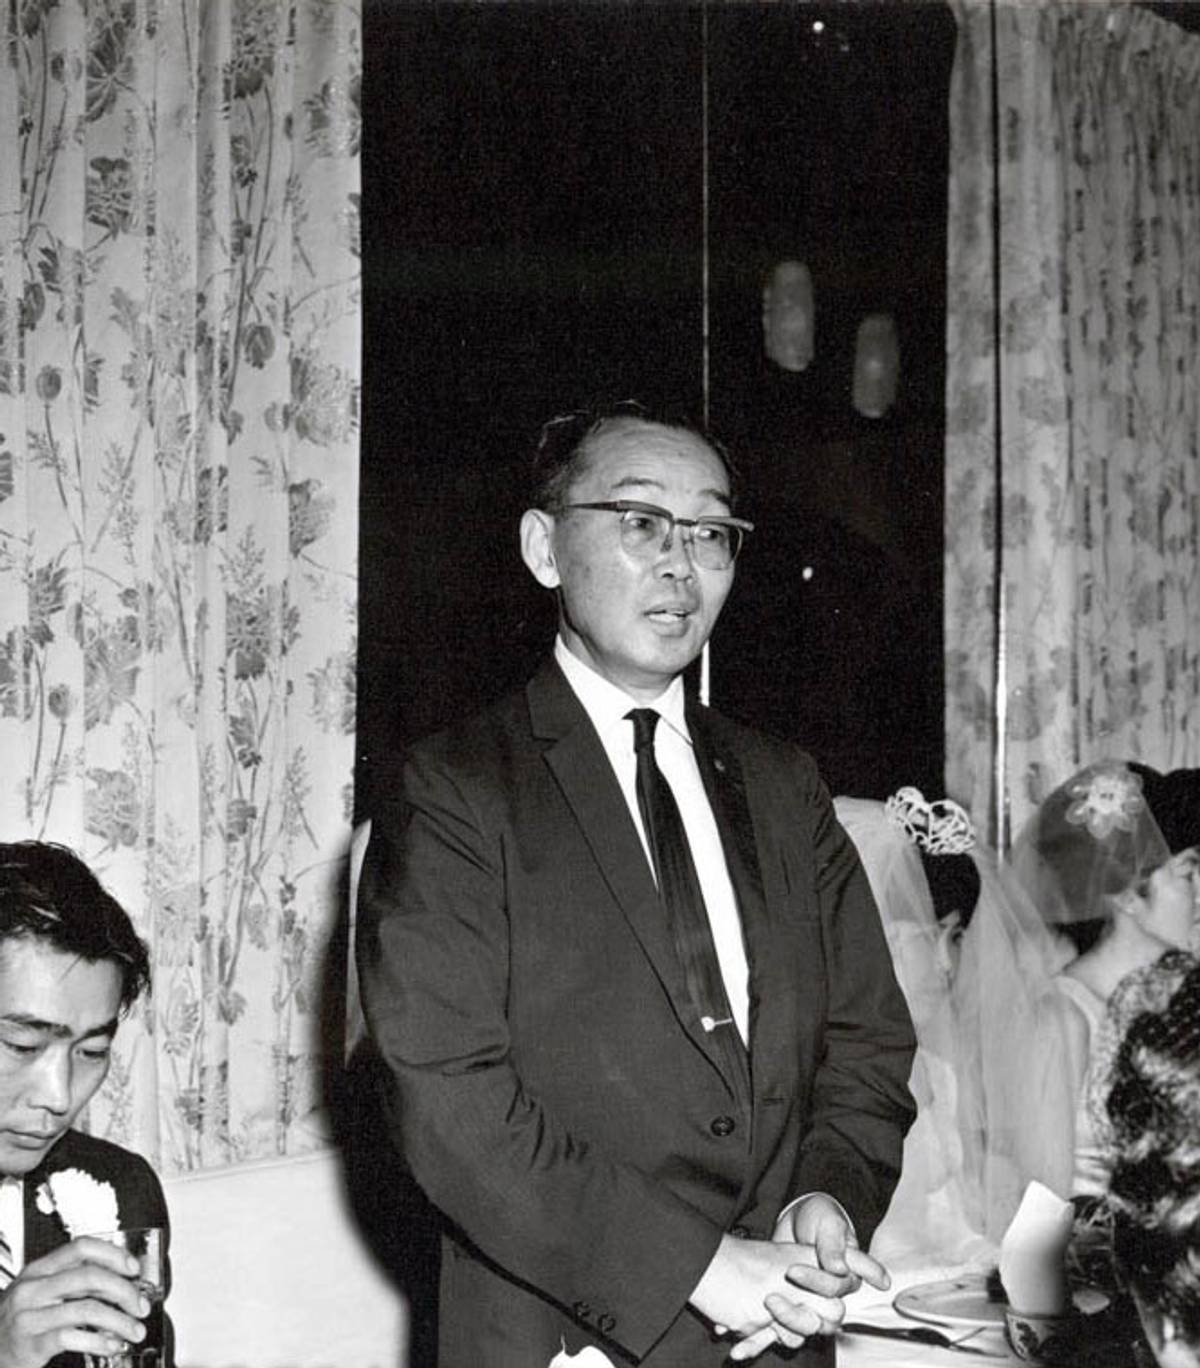 The Rev. Gyomay M. Kubose speaks at a congregant's wedding, 1962